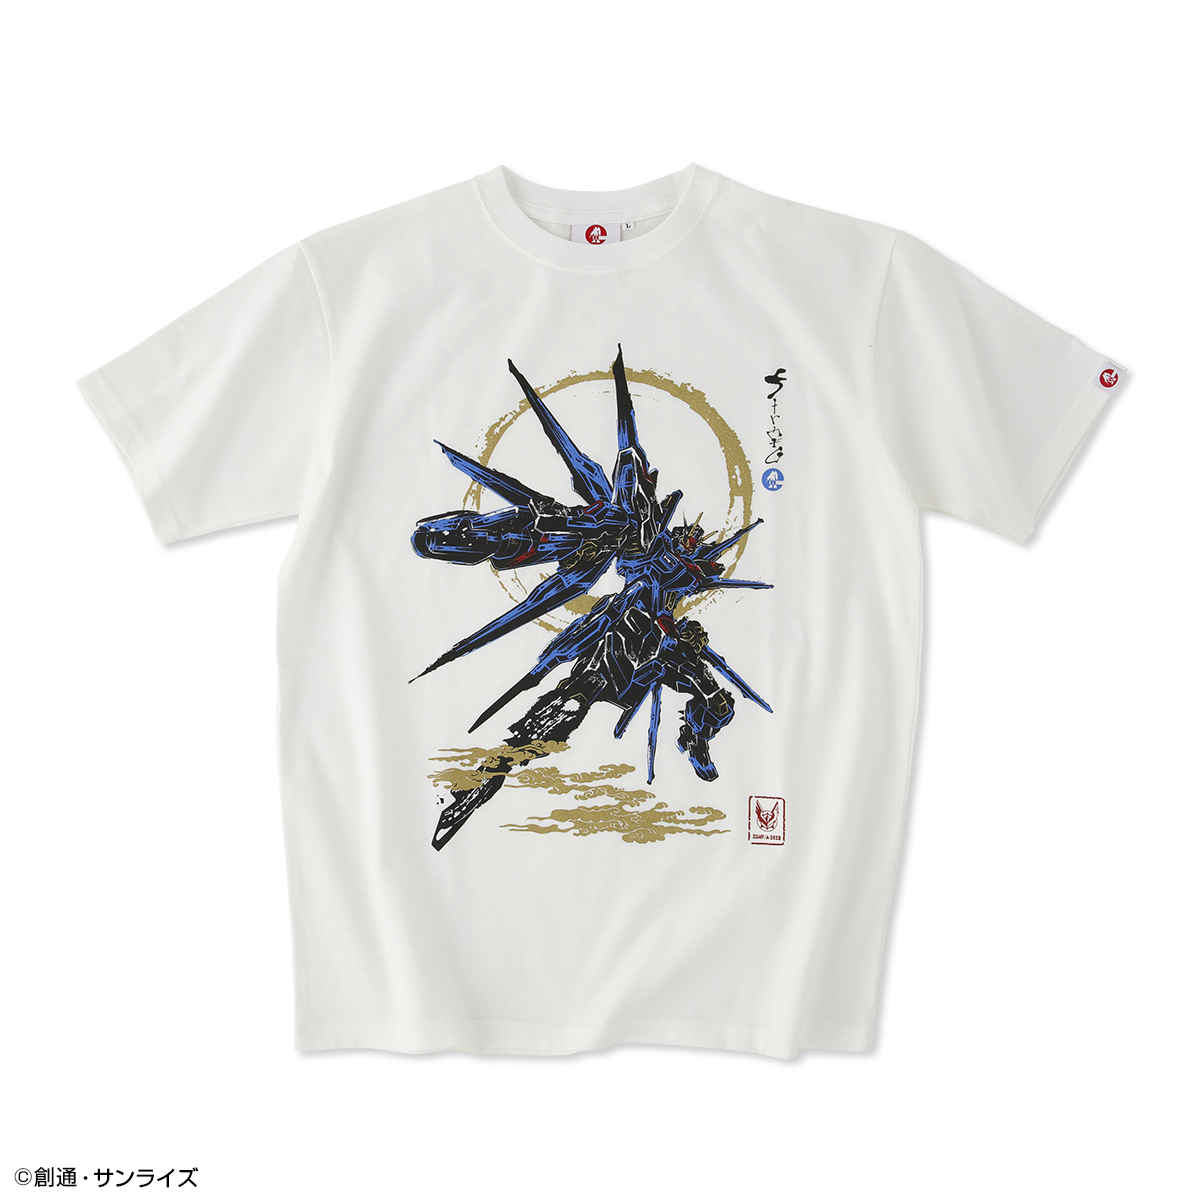 STRICT-G JAPAN『機動戦士SEED FREEDOM』Tシャツ ストライクフリーダムガンダム弐式